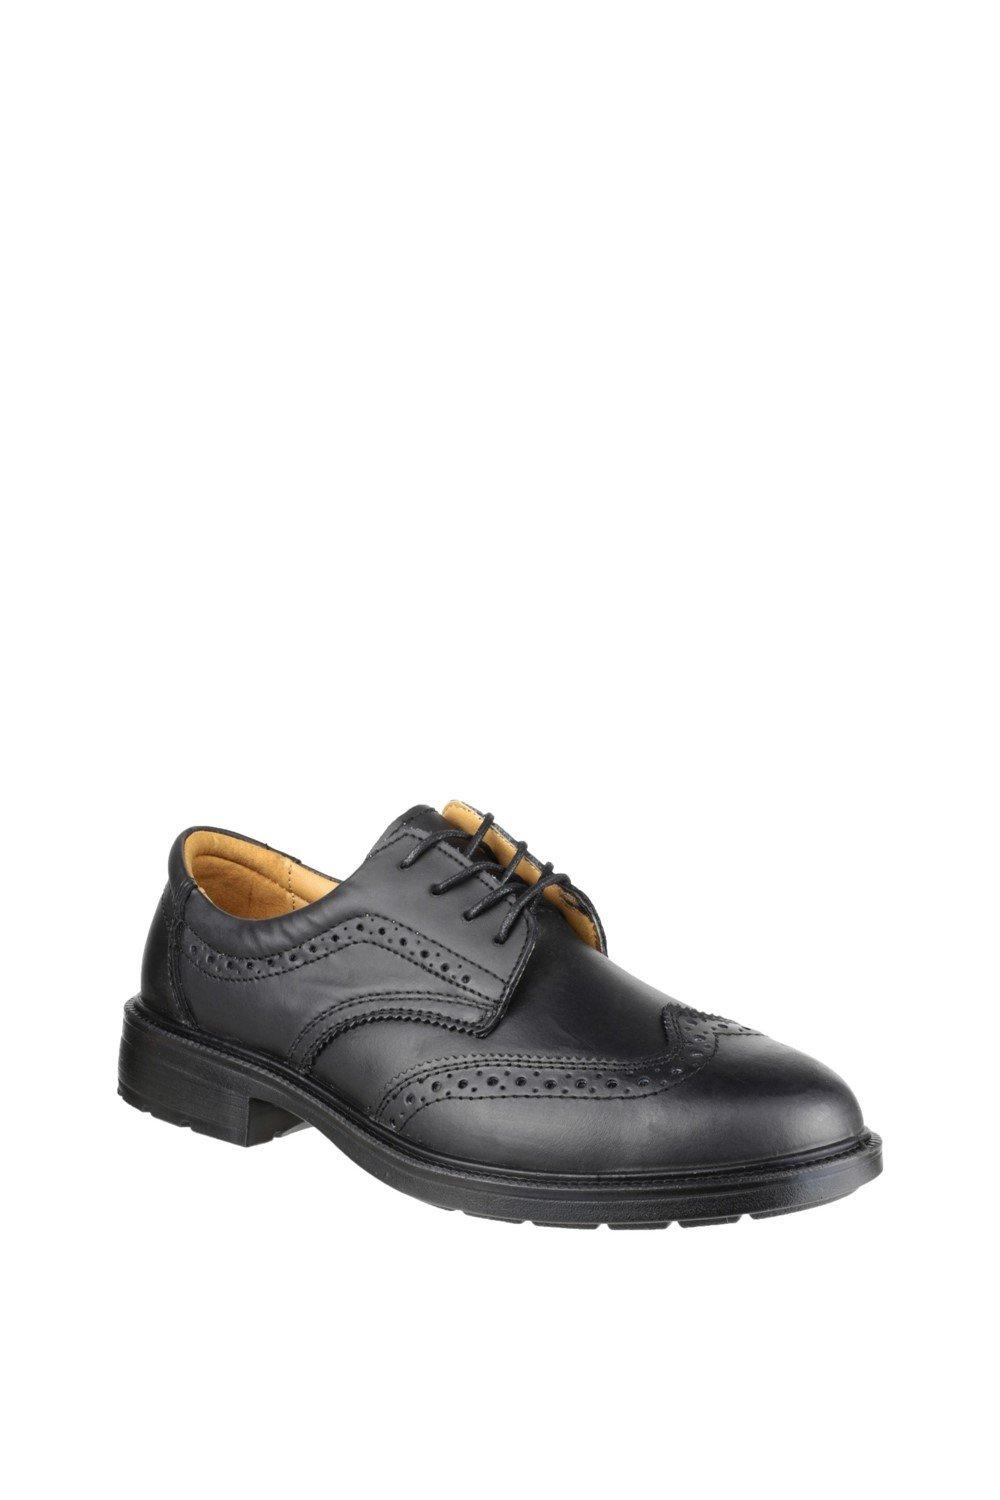 Защитная обувь 'FS44' Amblers Safety, черный кожаные туфли для девочки на шнуровке с нескользящей подошвой pablosky синий